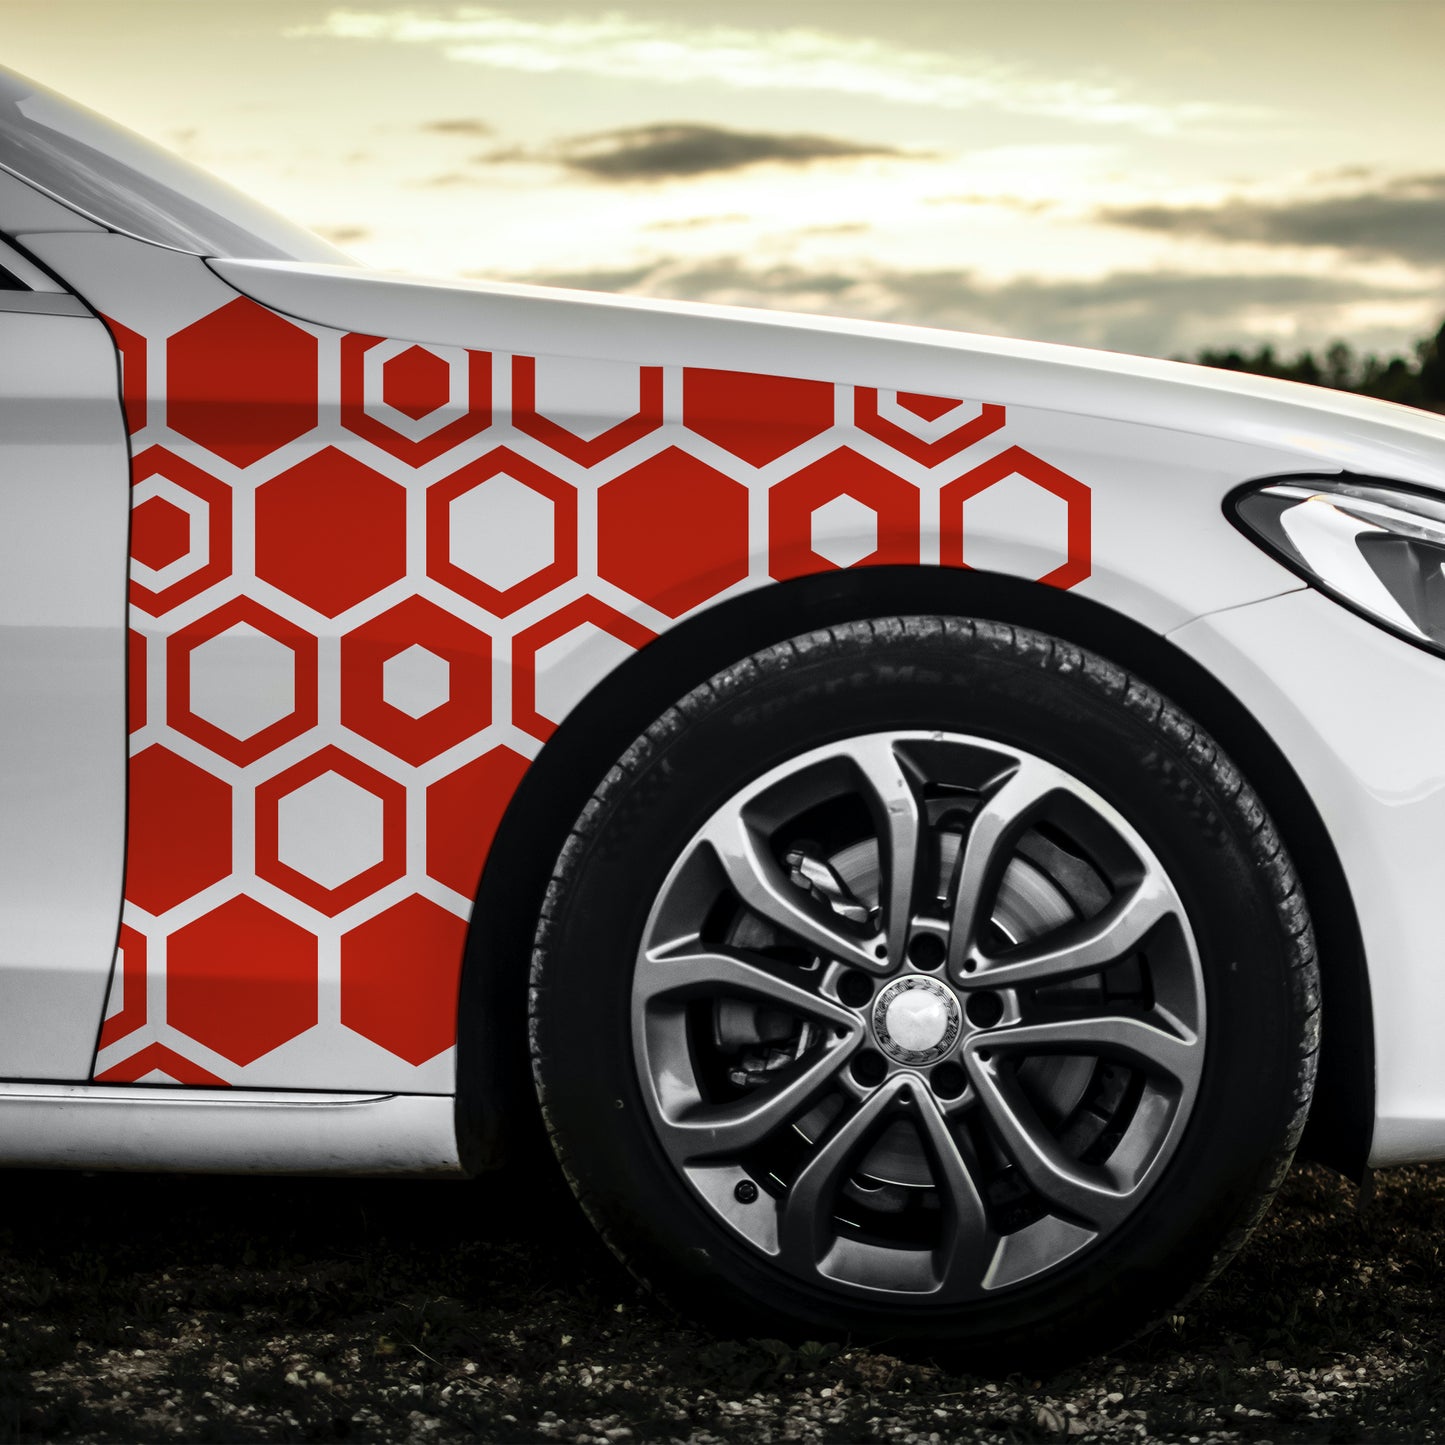 Стикер за автомобил - Пчелна Пита / Honeycomb